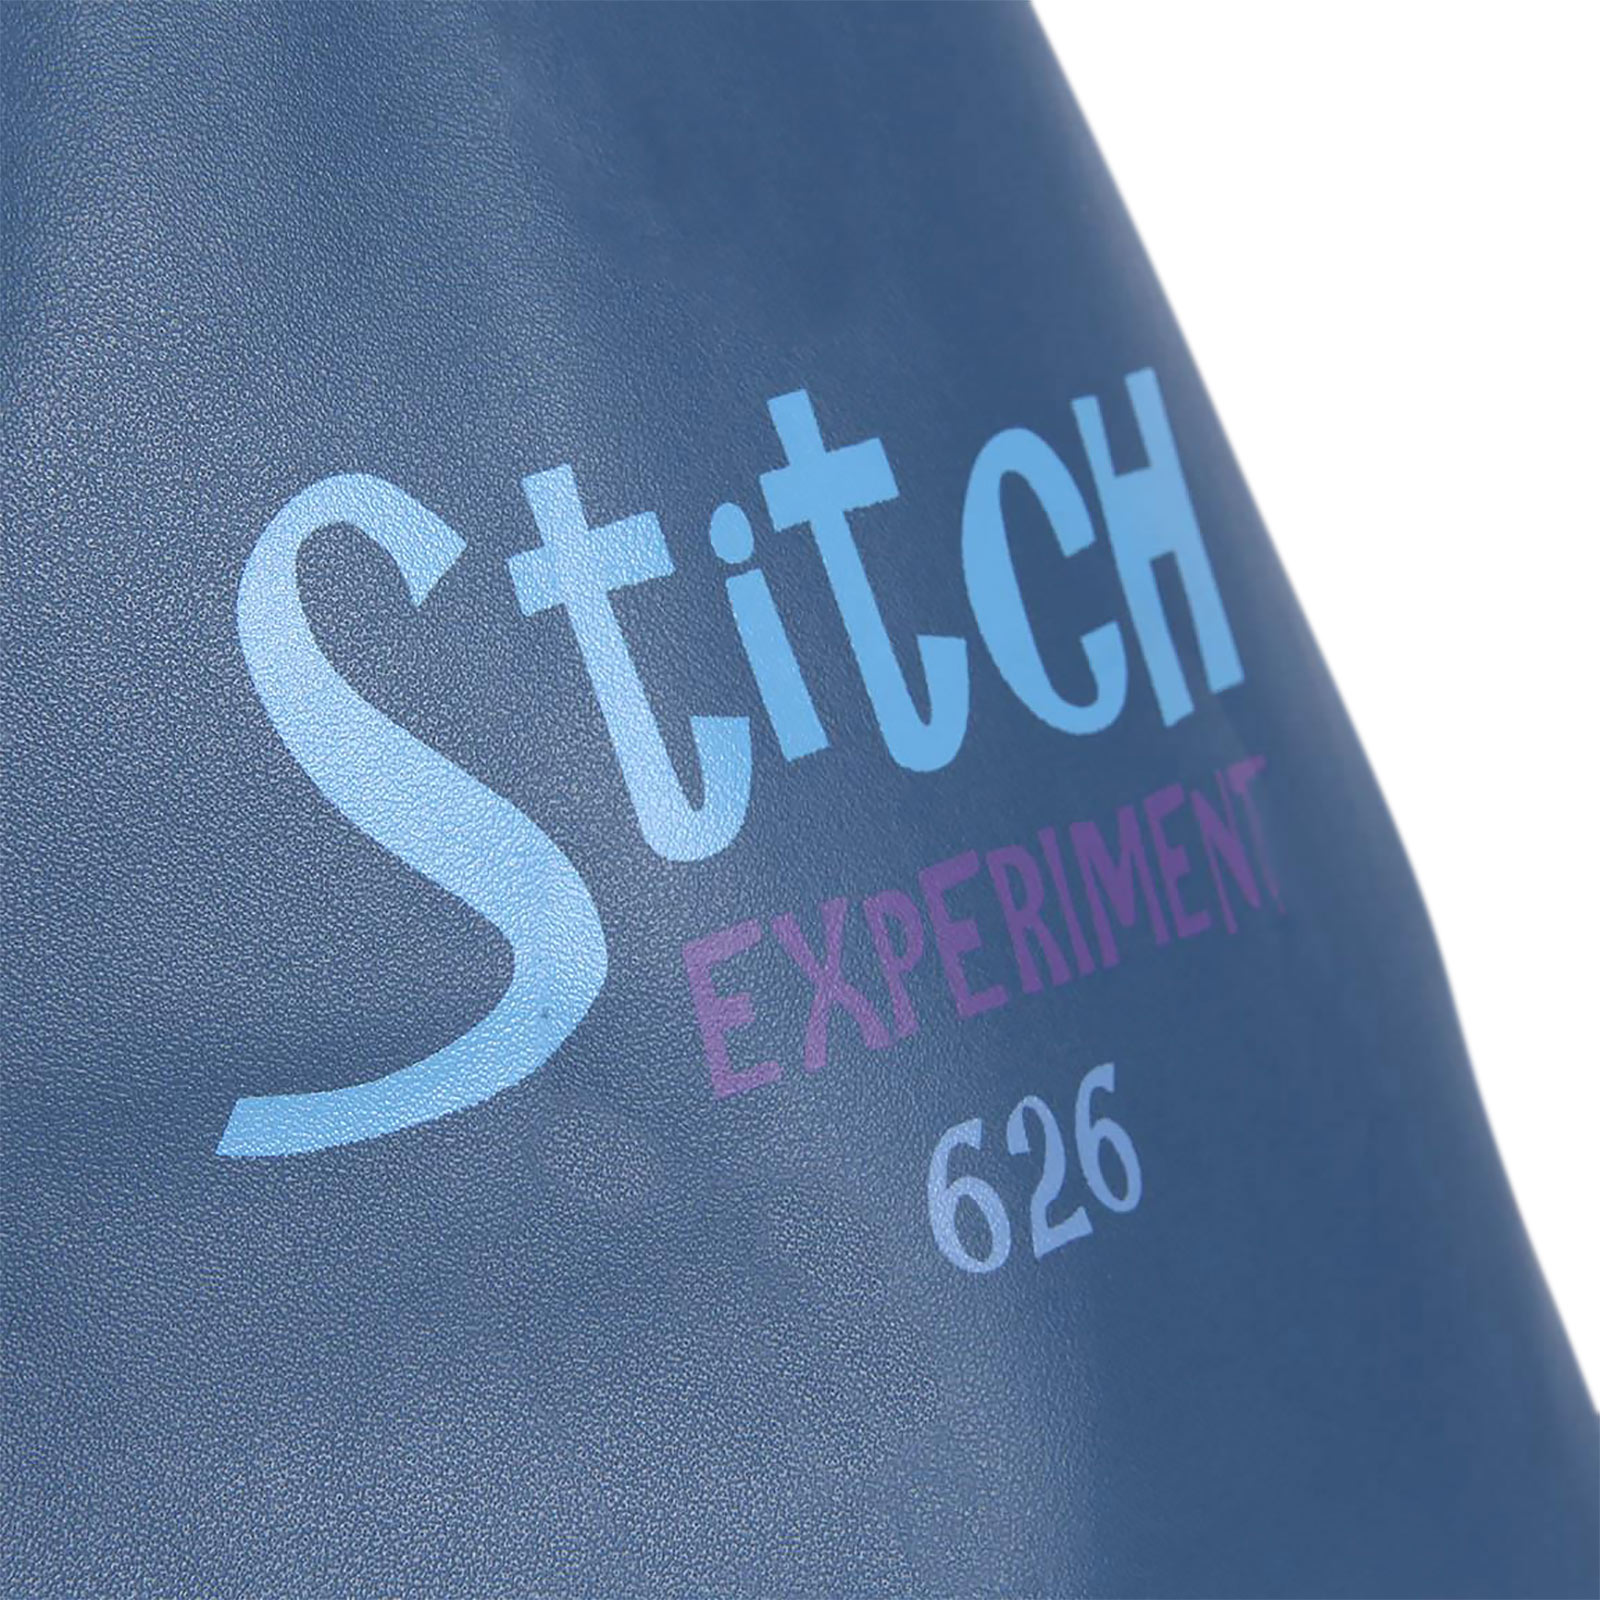 Lilo & Stitch - Stitch Shopper Bag